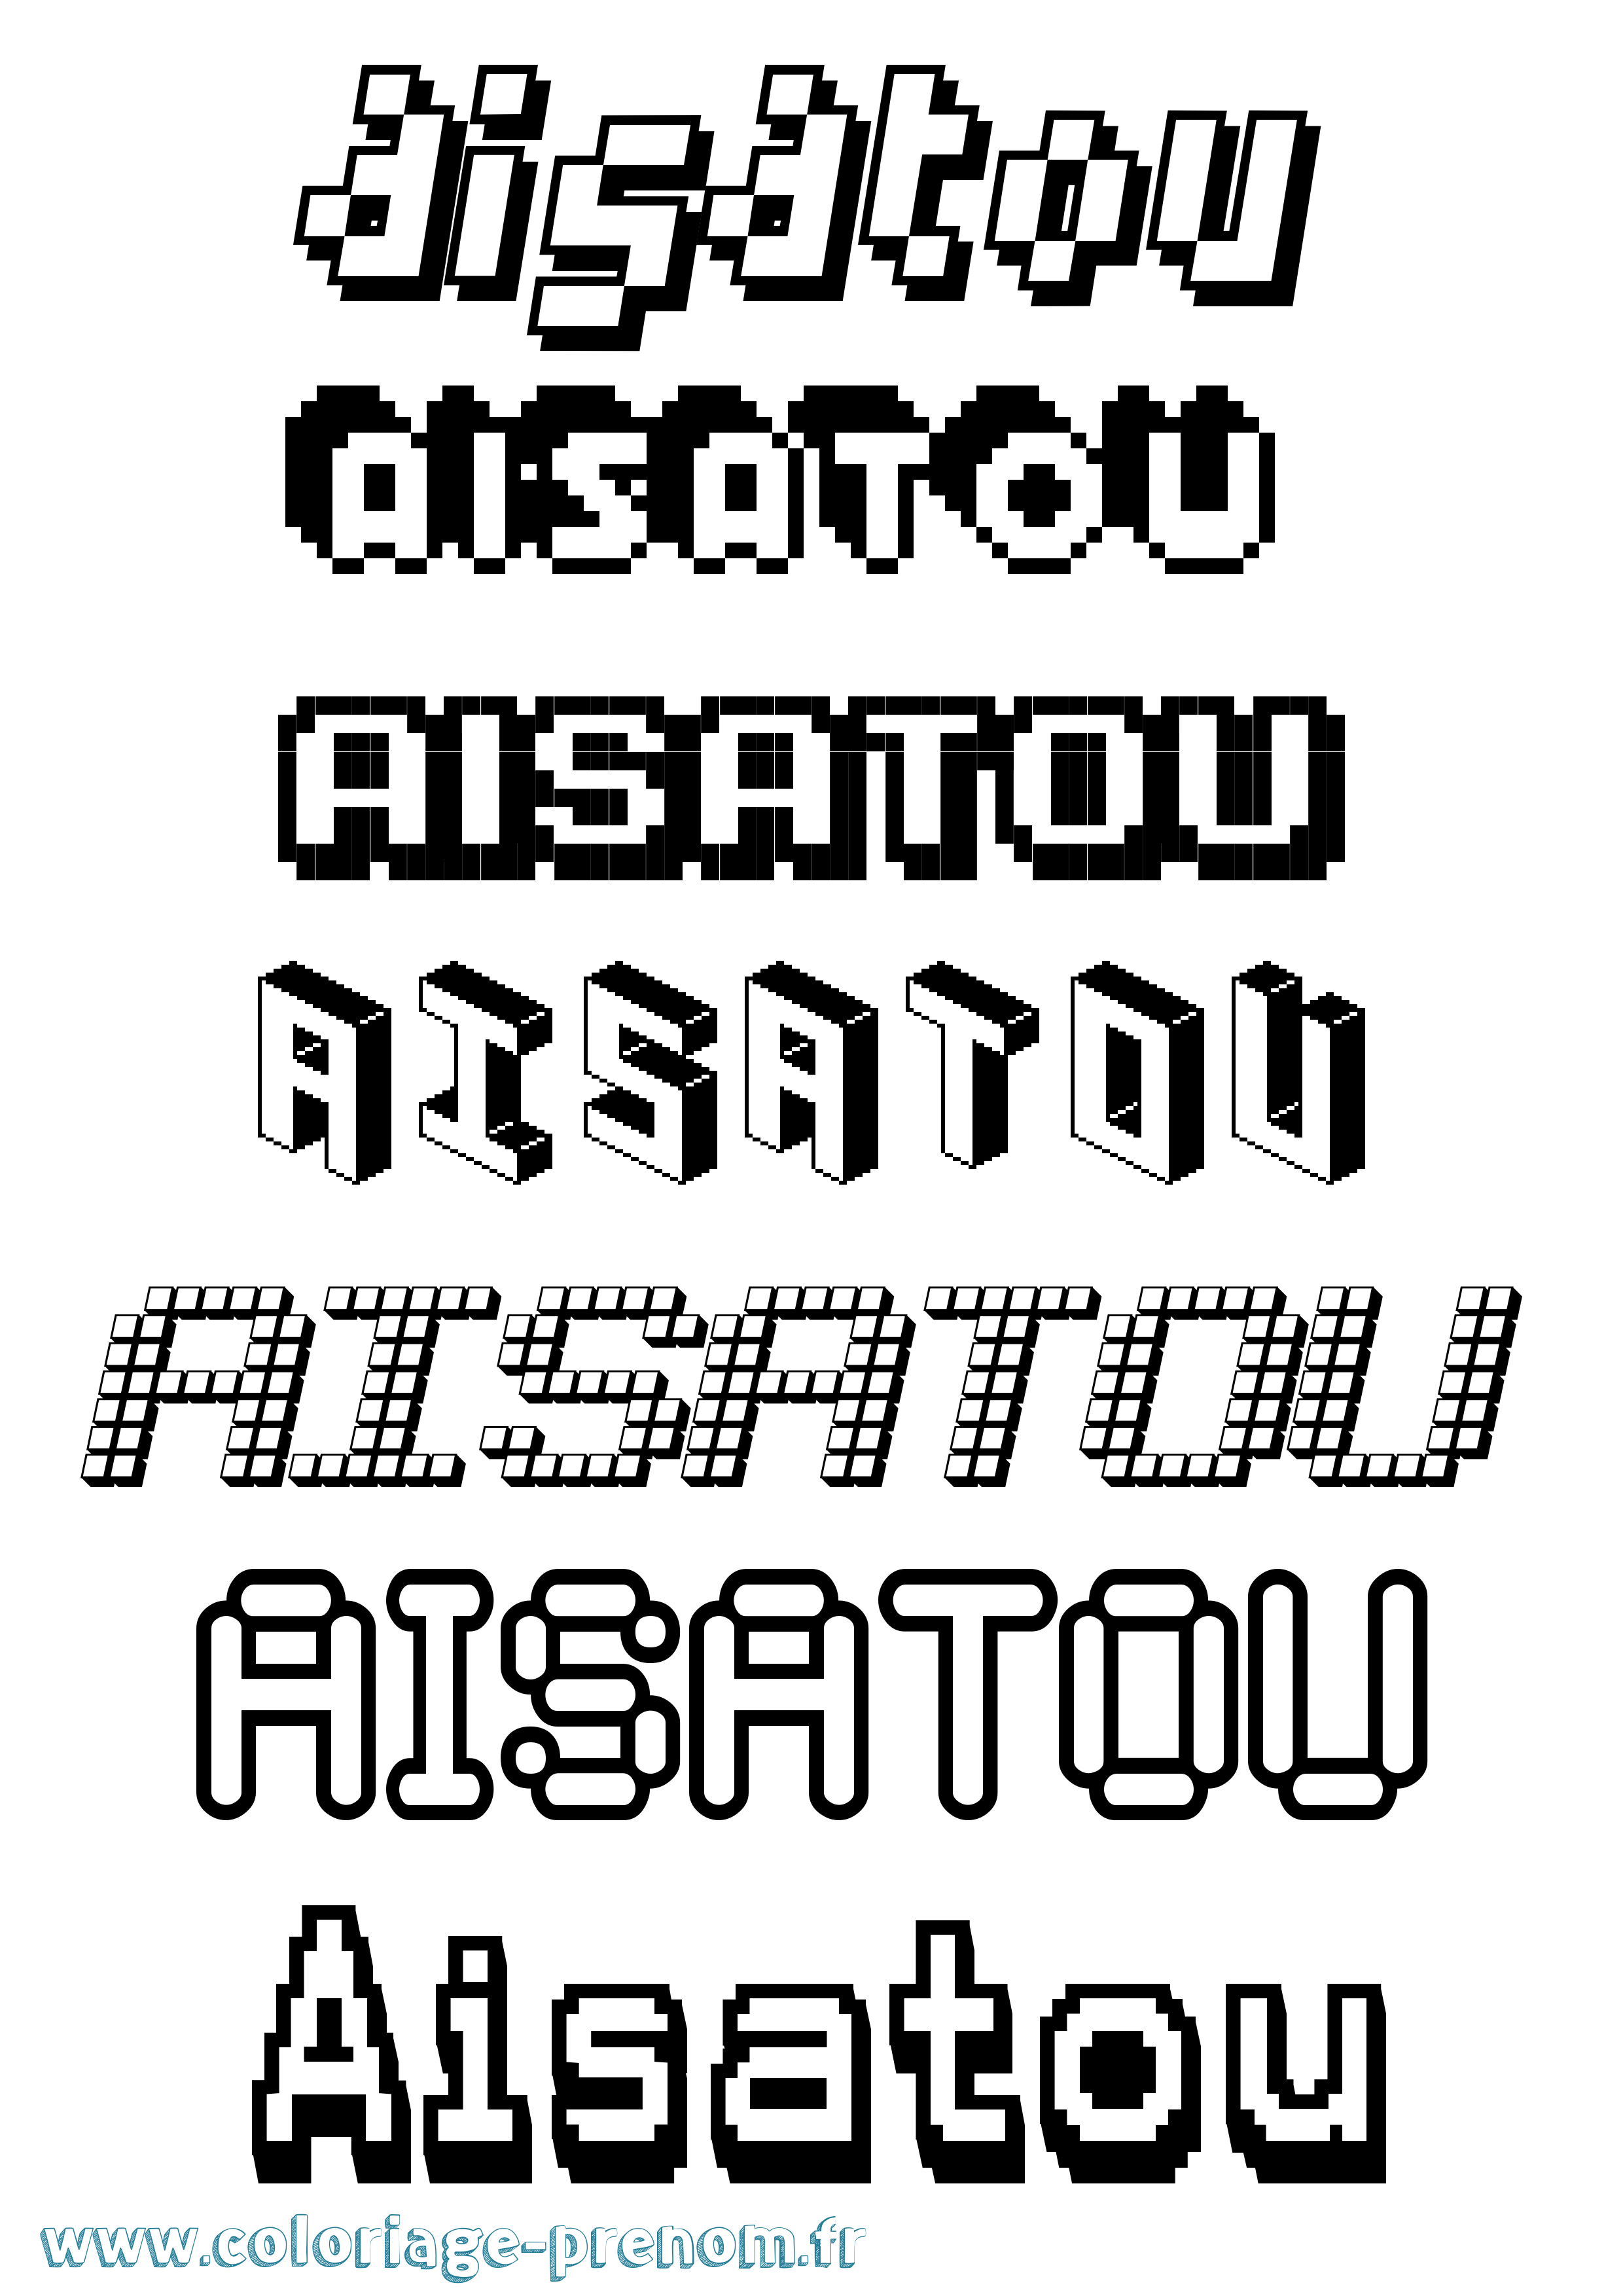 Coloriage prénom Aisatou Pixel